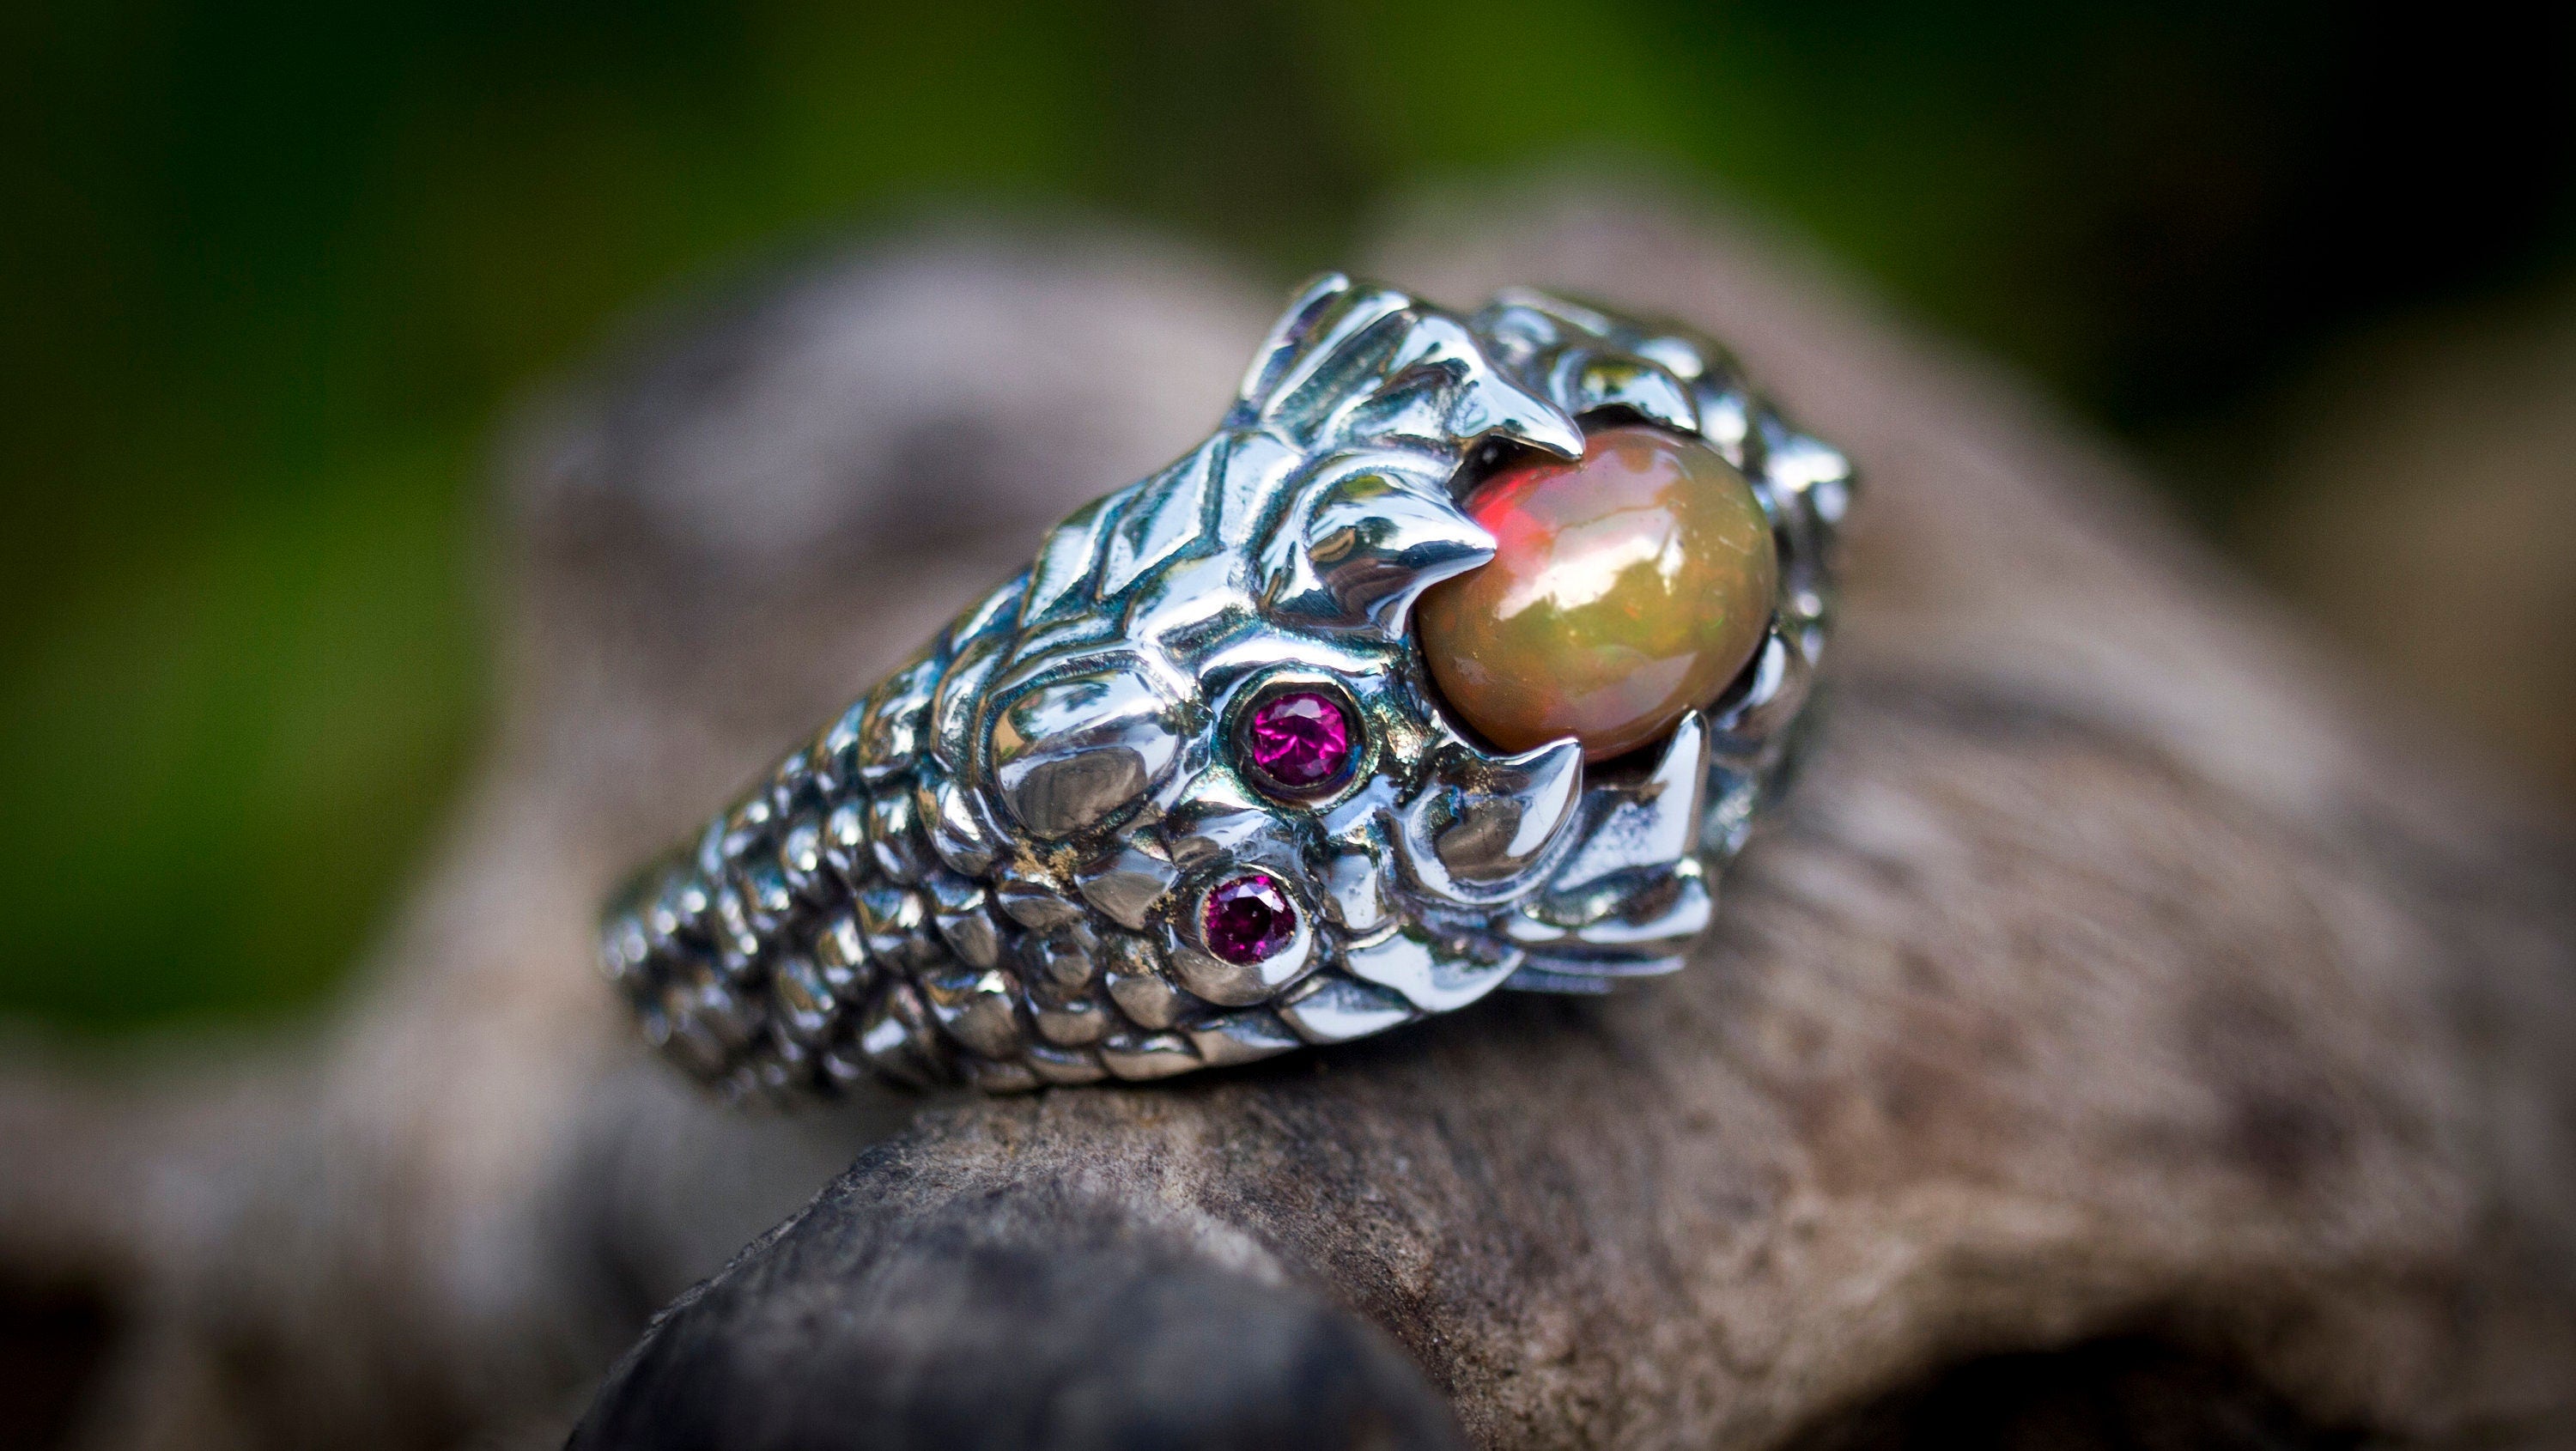 Dragon Ring with Gemstone 'Dragon Eye'